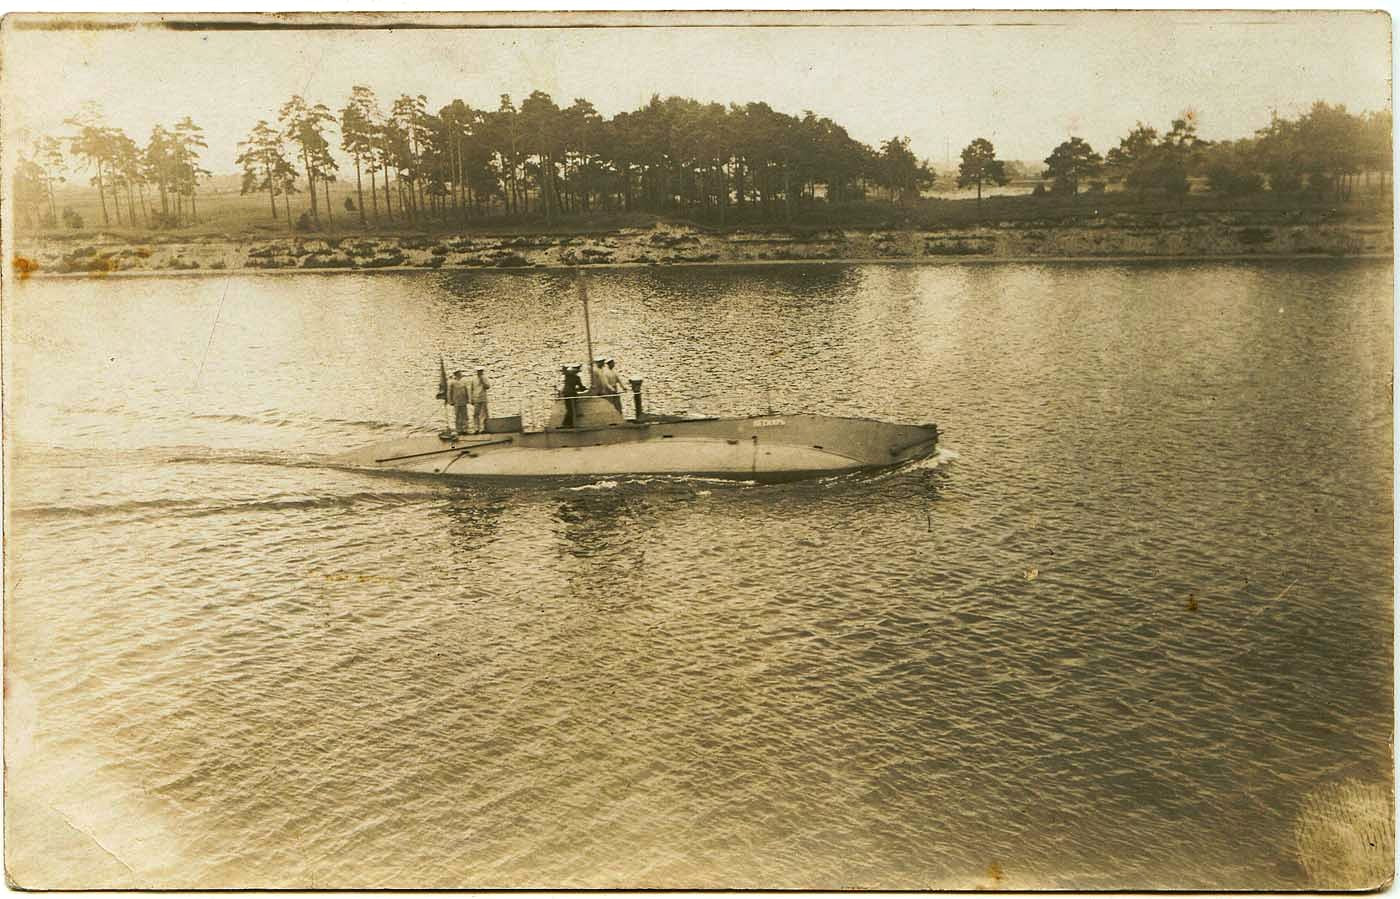 Pieskar (Libawskij kanał 1905).jpg